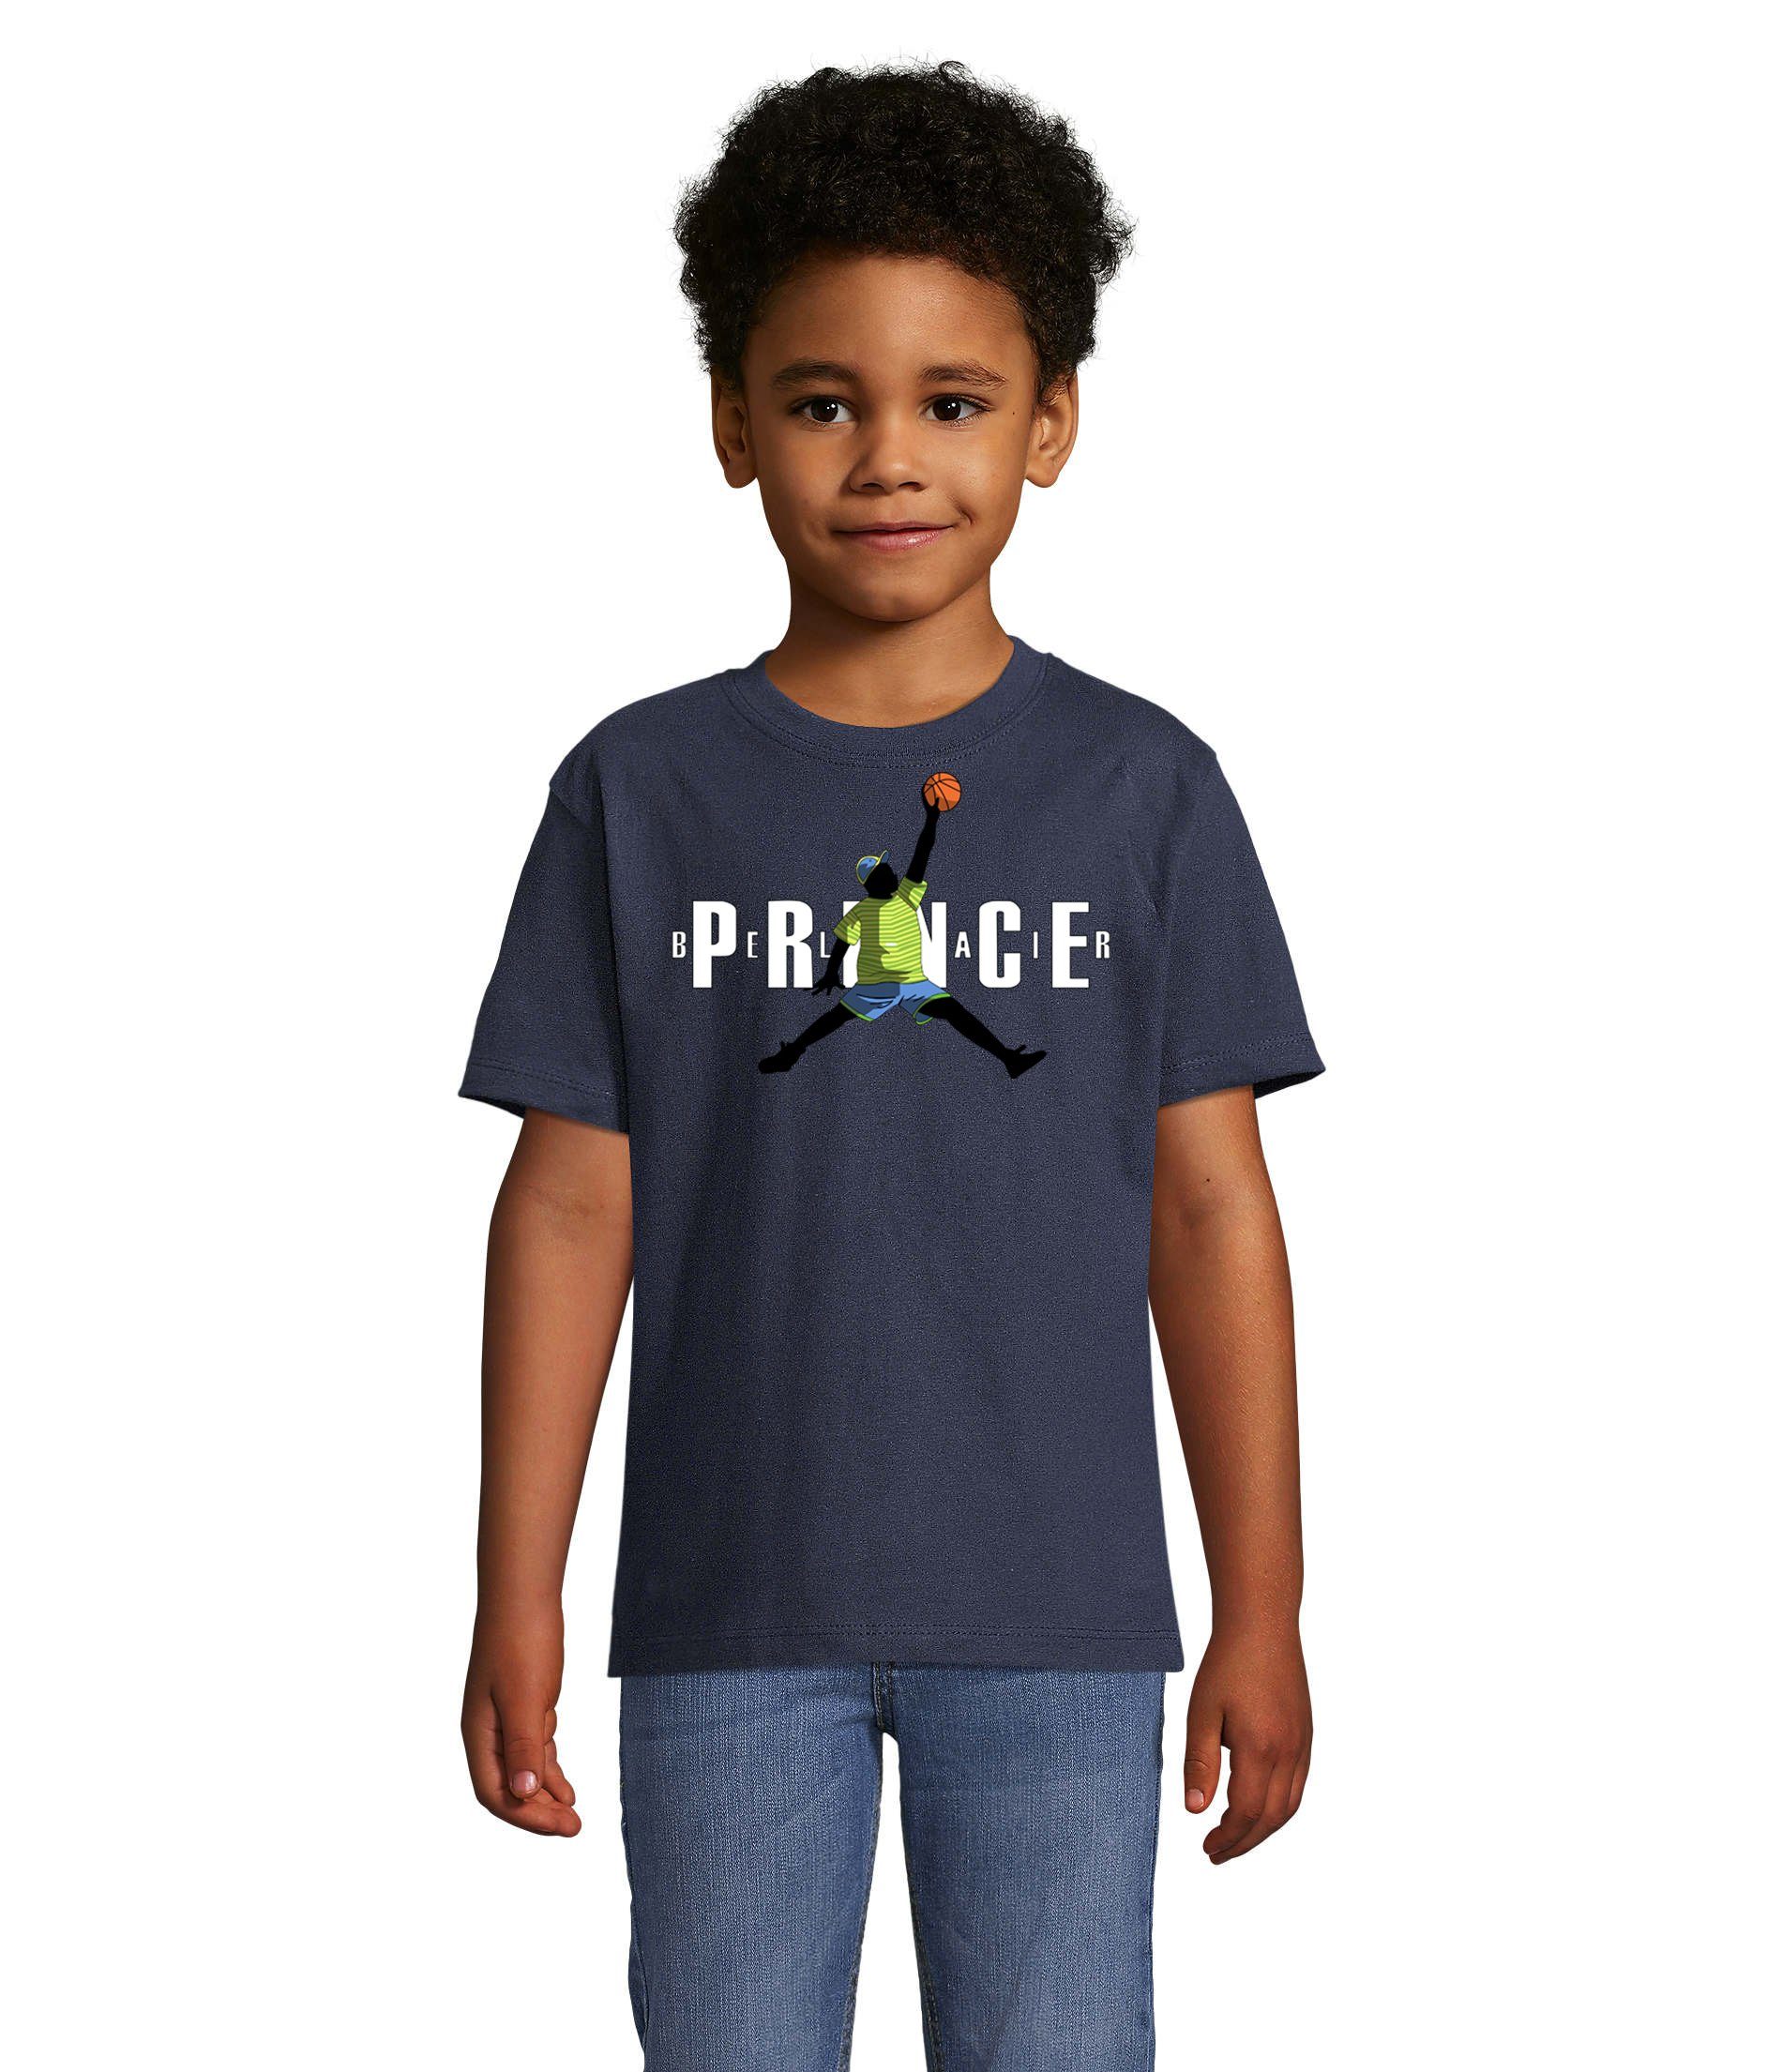 Blondie & Brownie T-Shirt Kinder Jungen & Mädchen Fresh Prince Bel Air Basketball in vielen Farben Navyblau